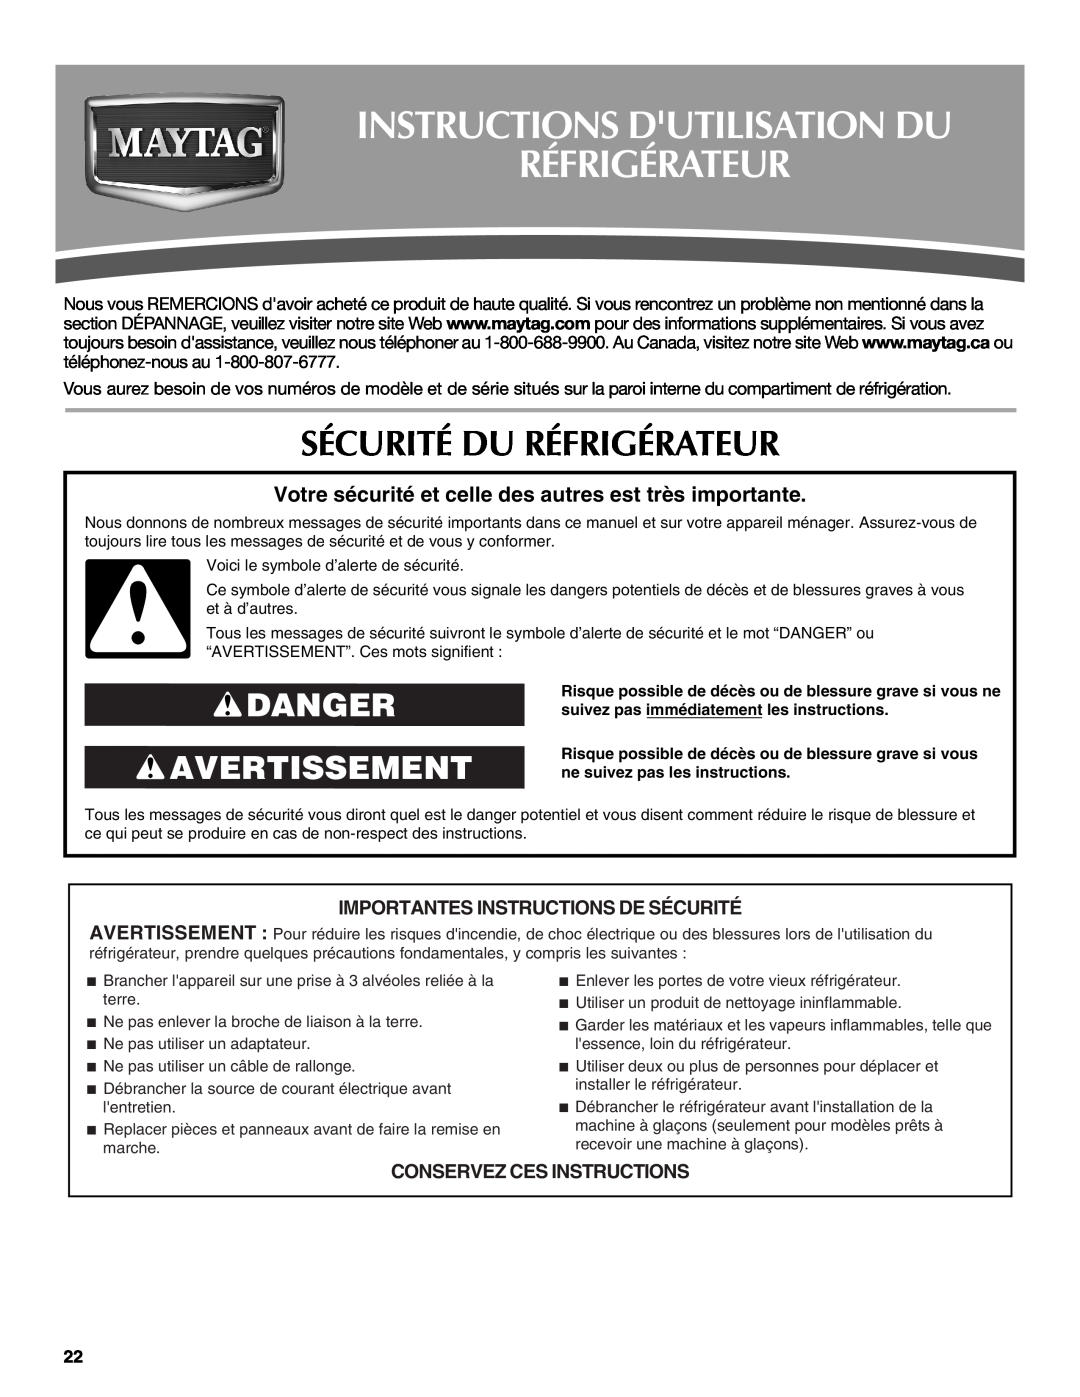 Maytag W10175446B manual Sécurité Du Réfrigérateur, Danger Avertissement, Importantes Instructions De Sécurité 